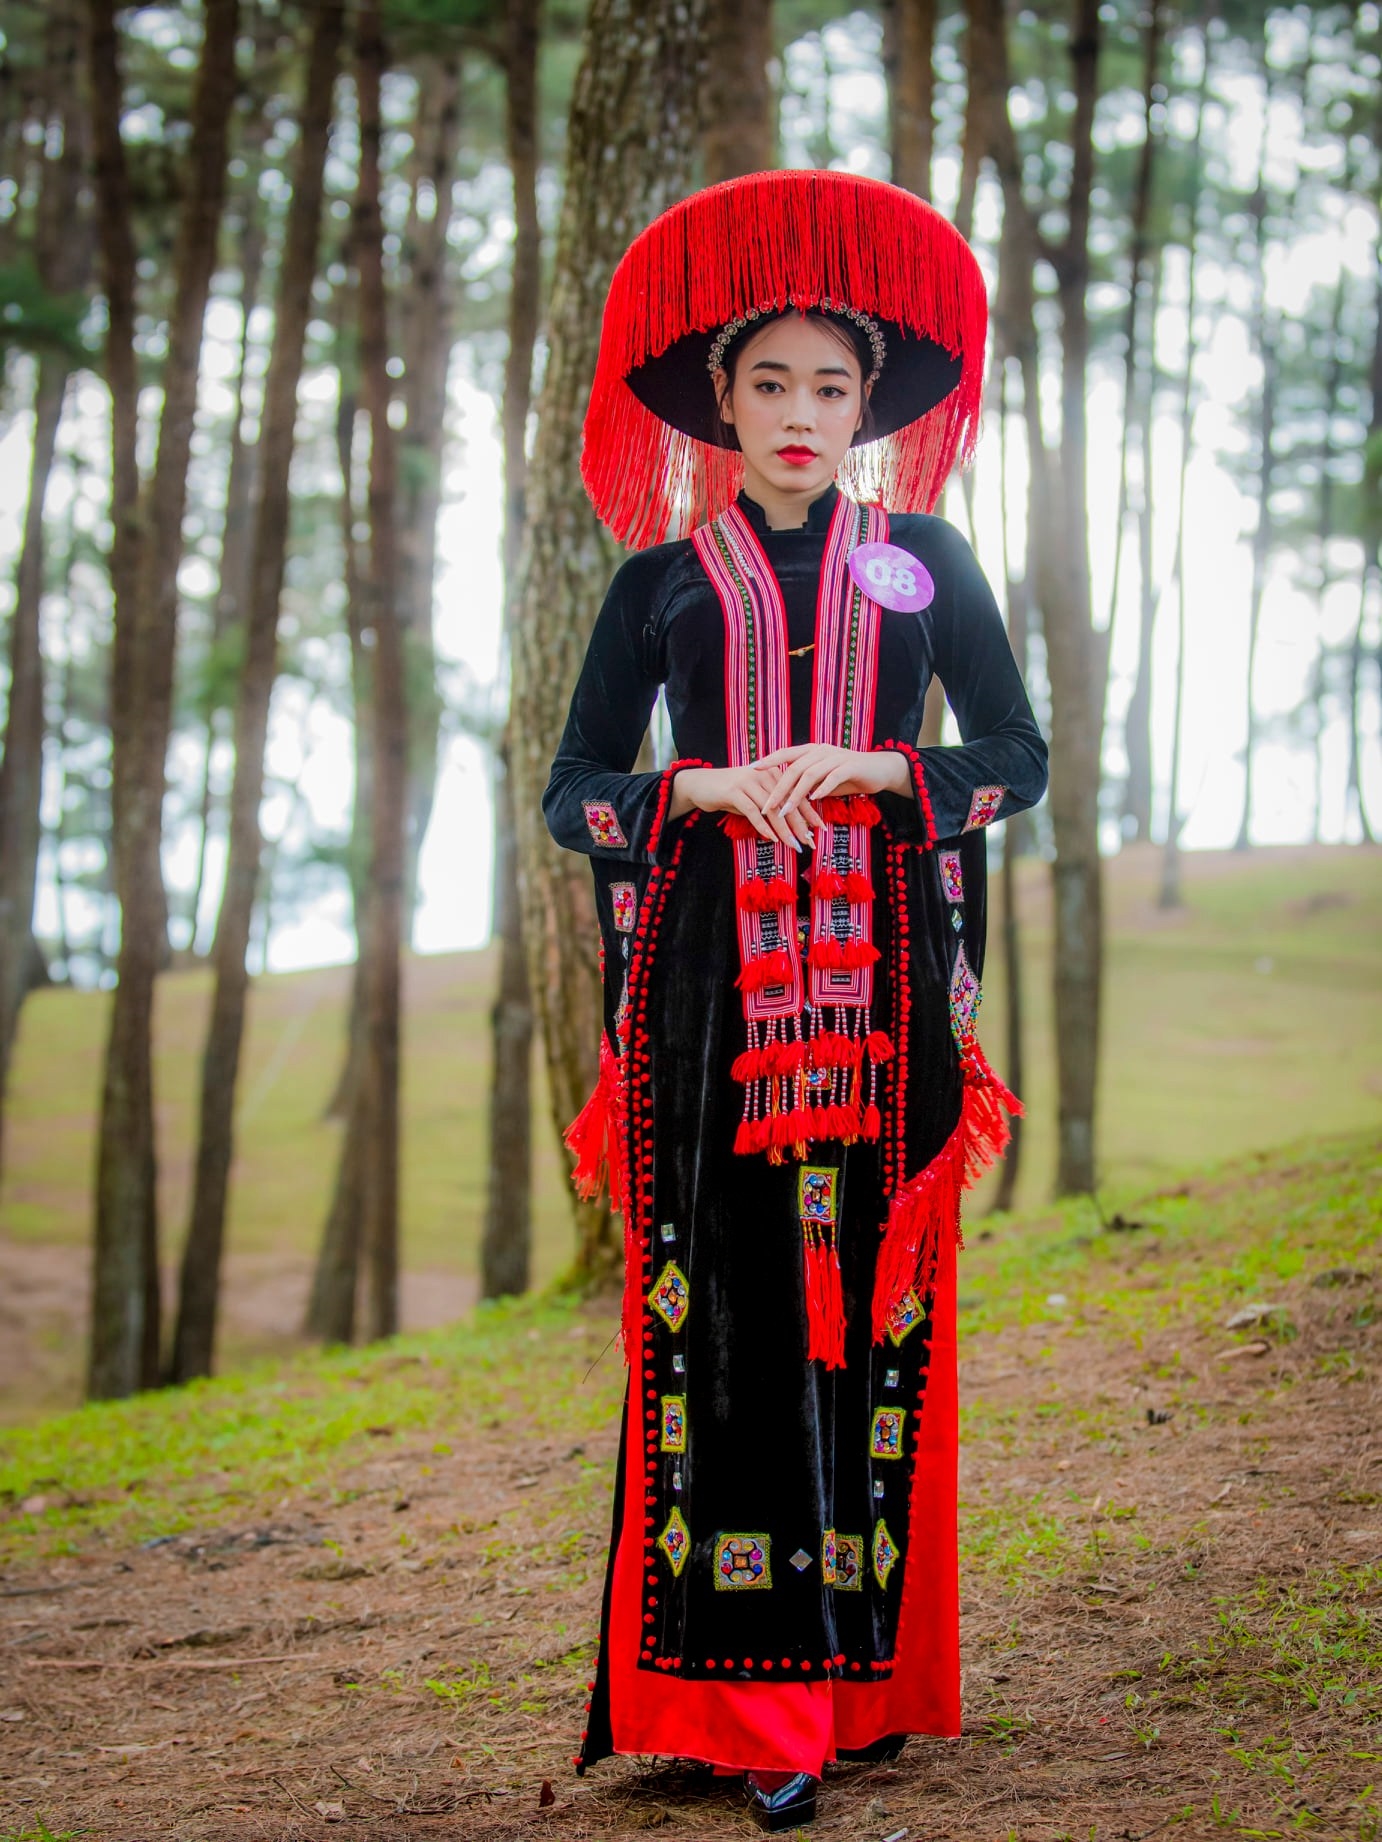 Hoa khôi “Người đẹp miền Cao nguyên đá” Tạ Thùy Trang tỏa sáng trong bộ trang phục dân tộc